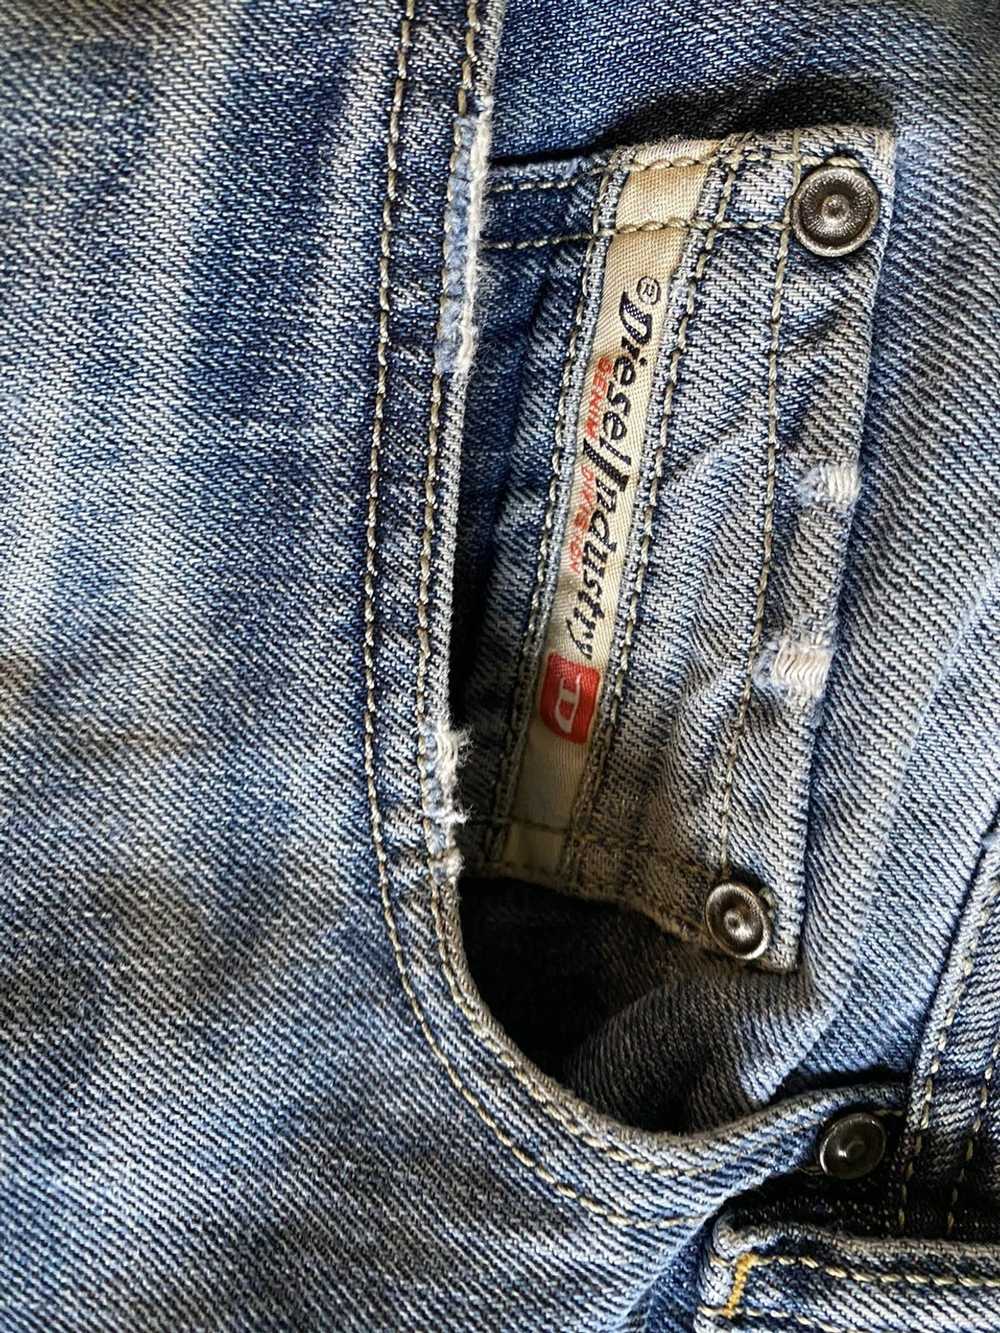 Diesel Diesel Imdustry zatham Jeans Made in Italy - image 5